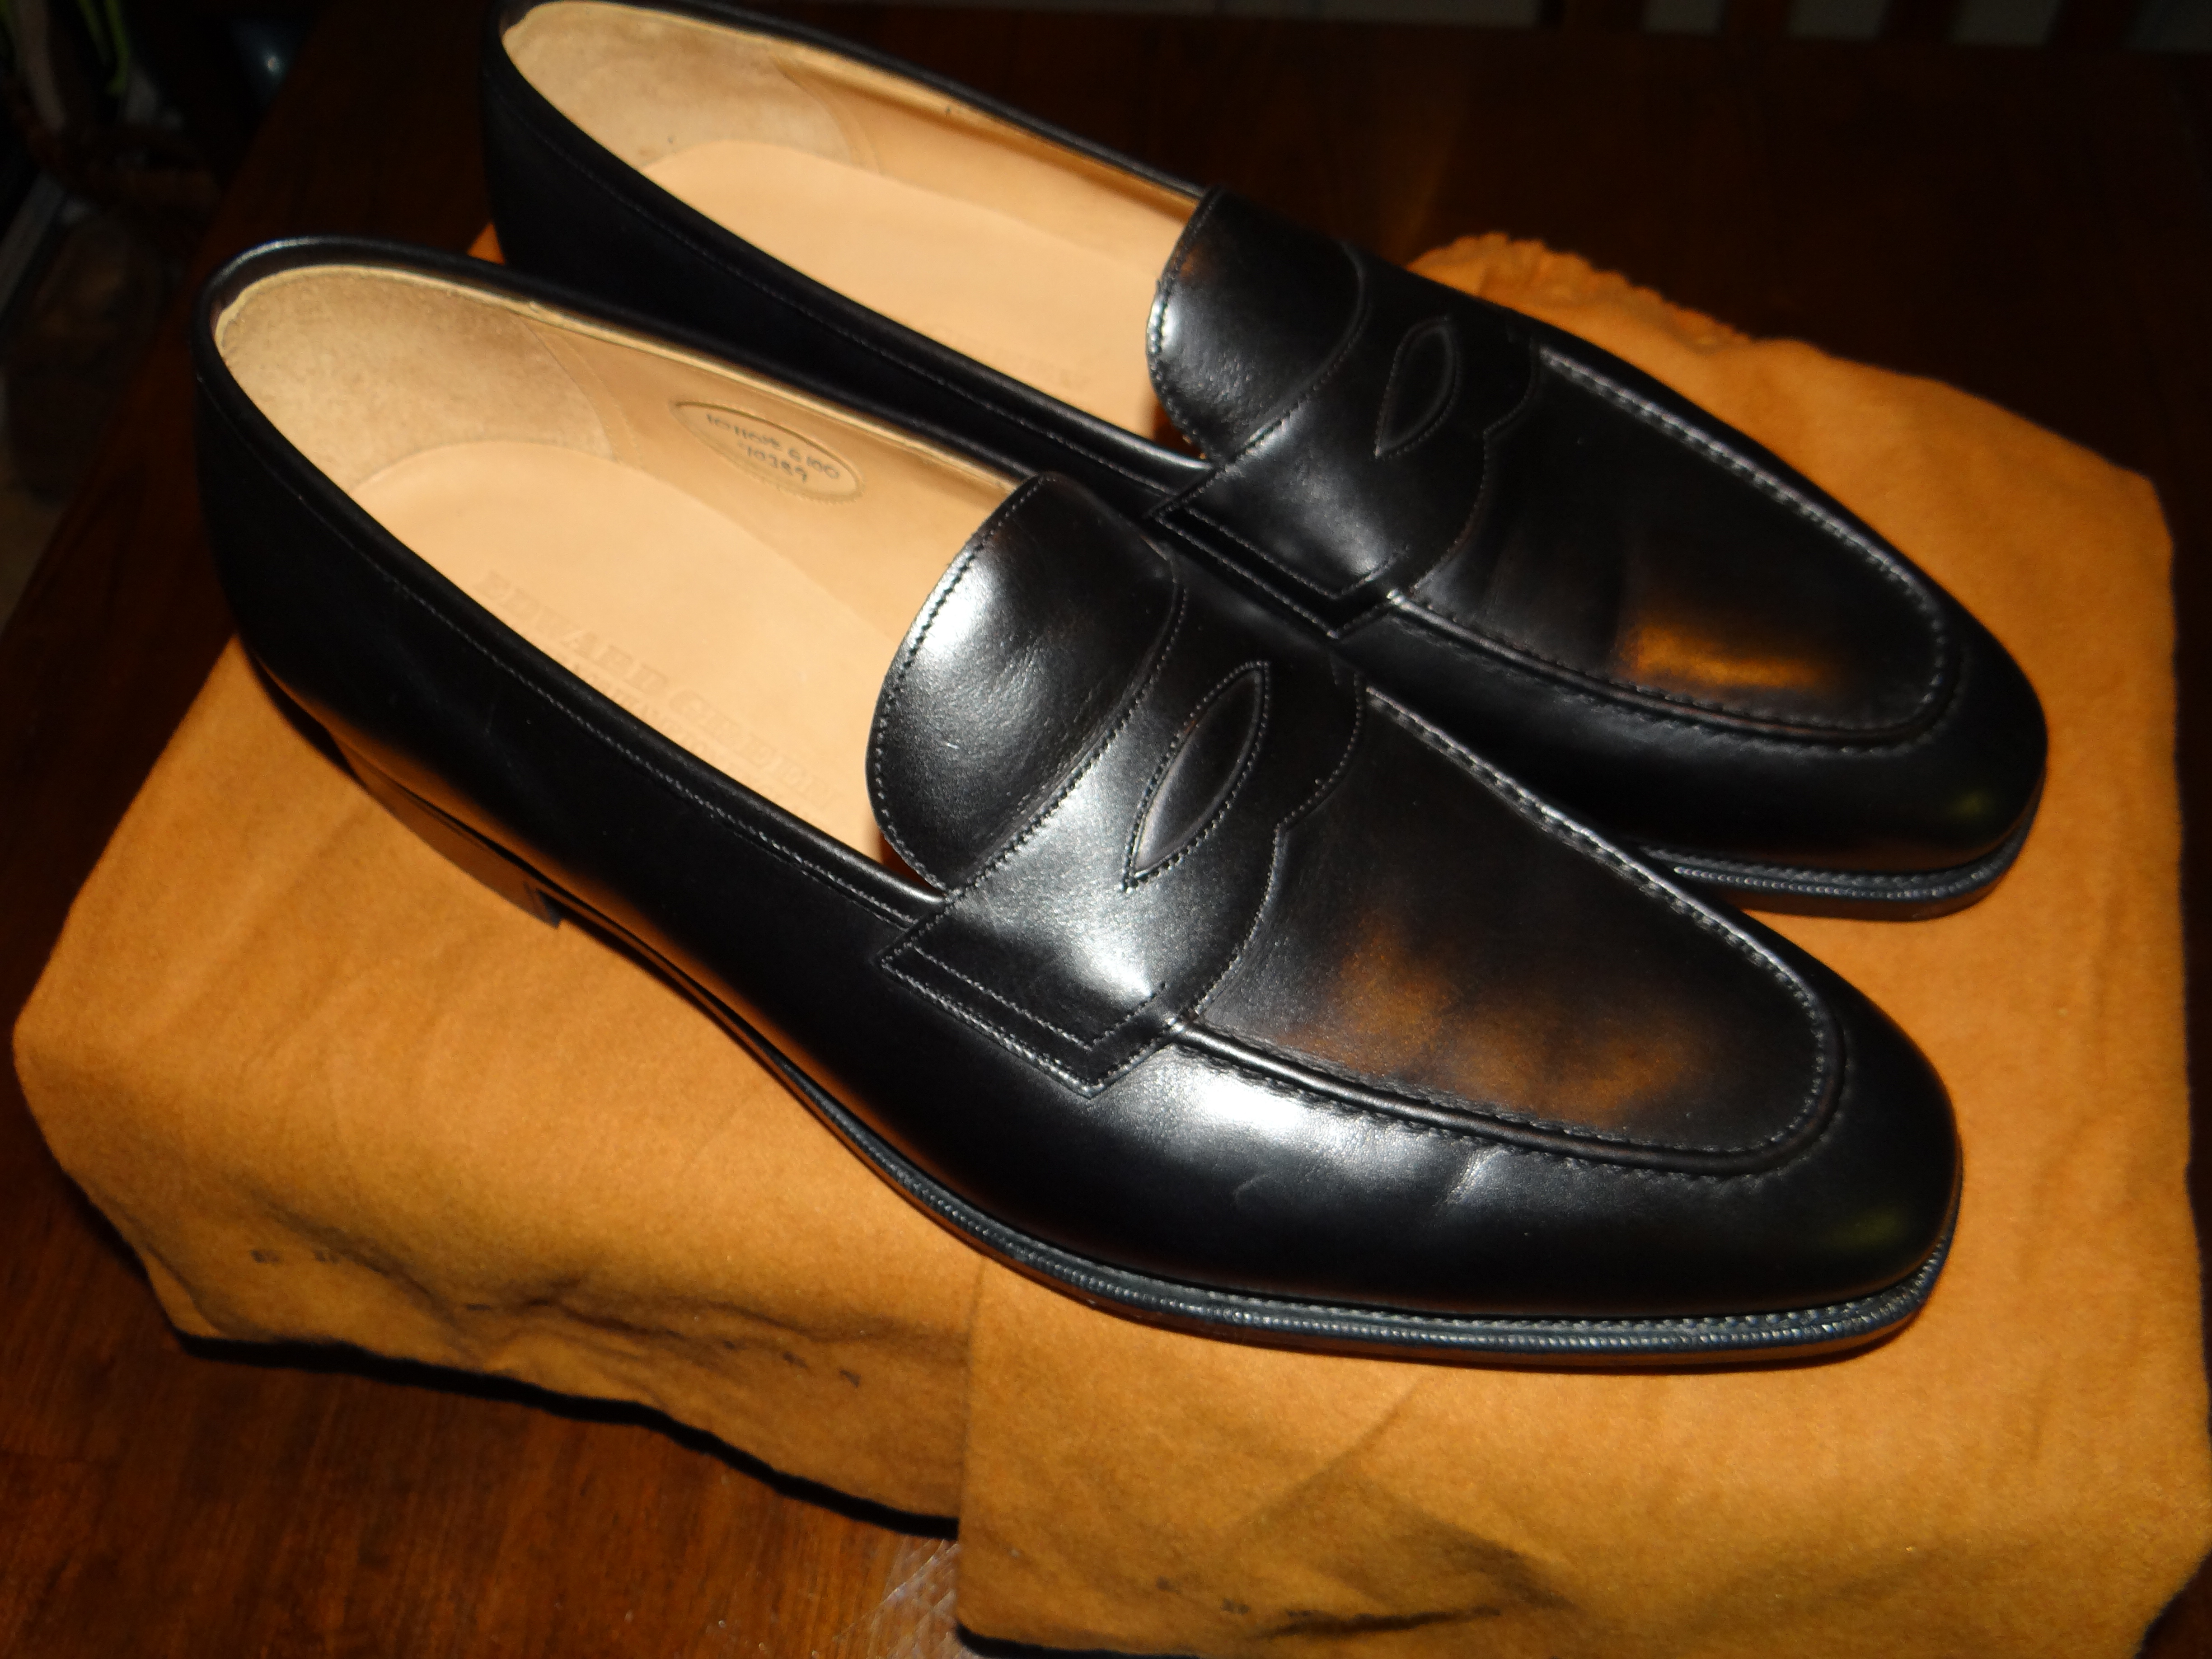 6/30 DROP! NIB Shoes & Boots from Gaziano & Girling, Edward Green ...